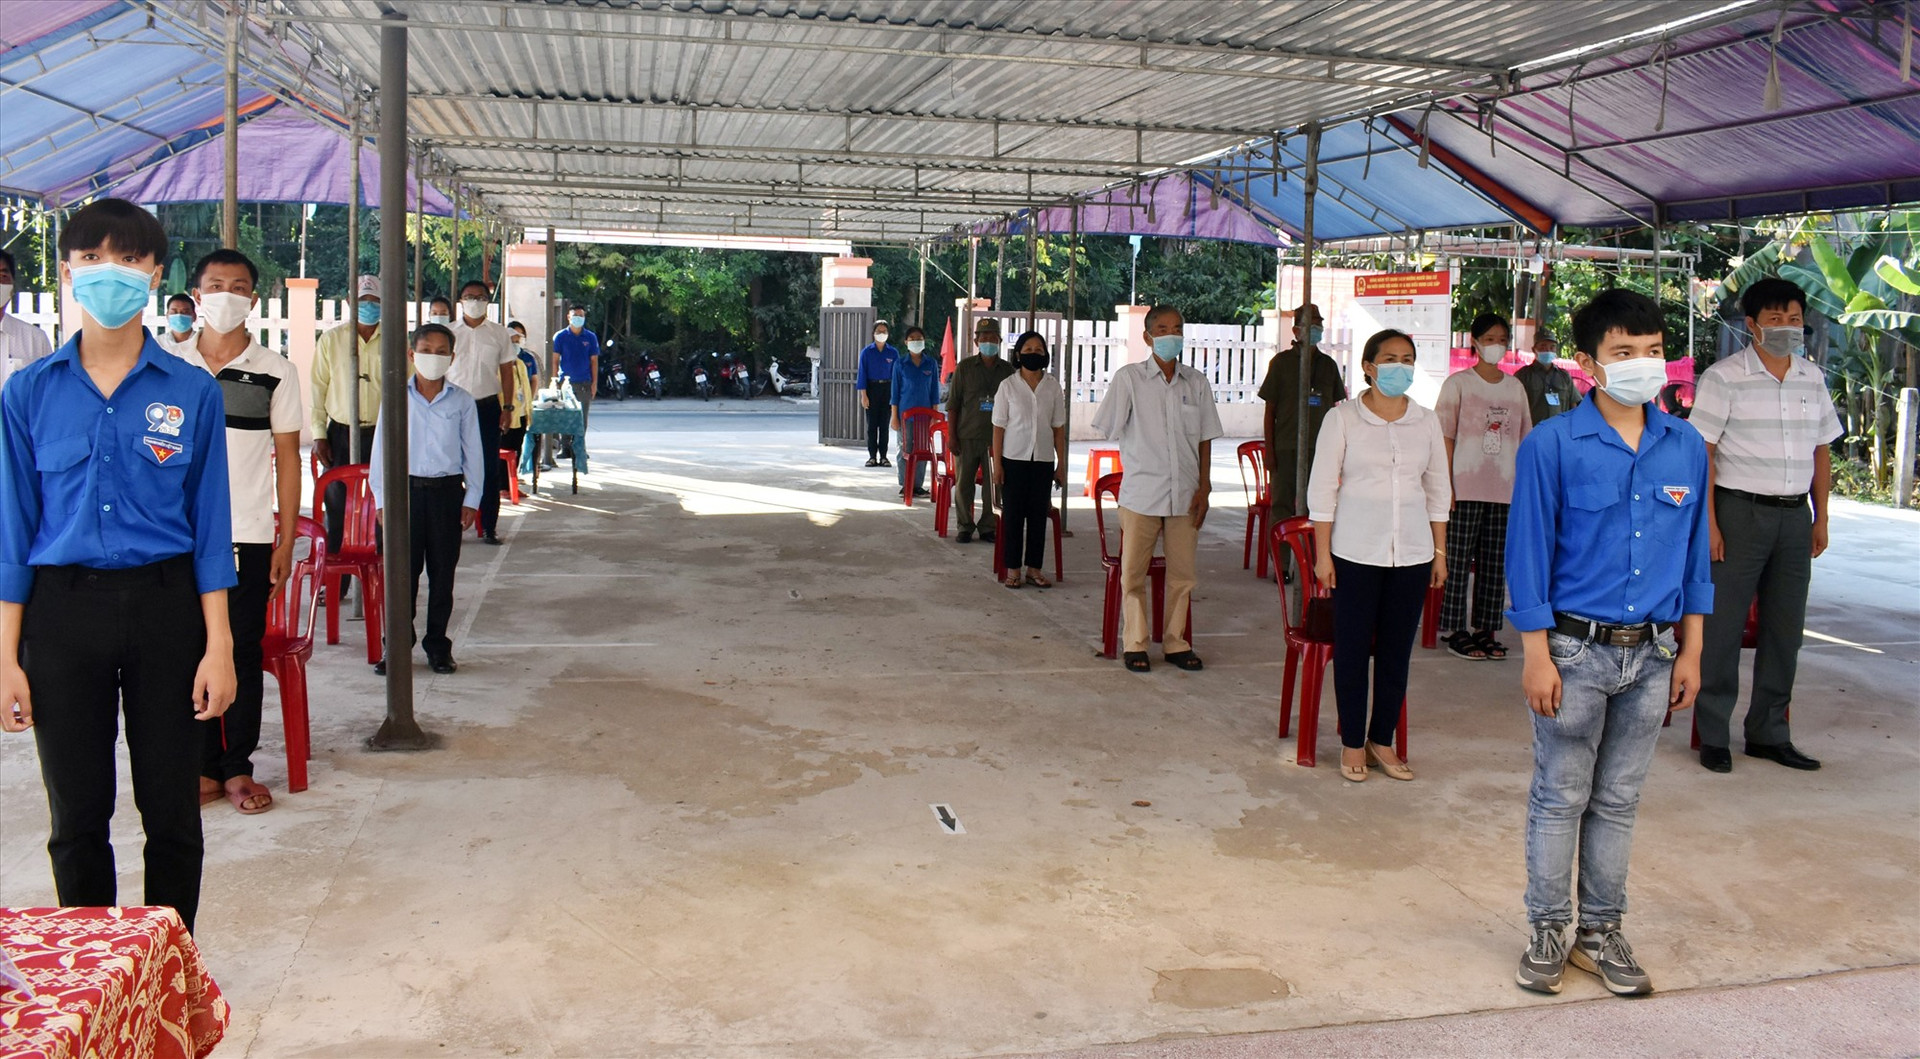 Nhằm đảm bảo công tác phòng chống dịch, Điện Bàn yêu cầu các tổ bầu cử chia cử tri thành nhiều nhóm bỏ phiếu các khoảng thời gian khác nhau và thực hiện giãn cách.